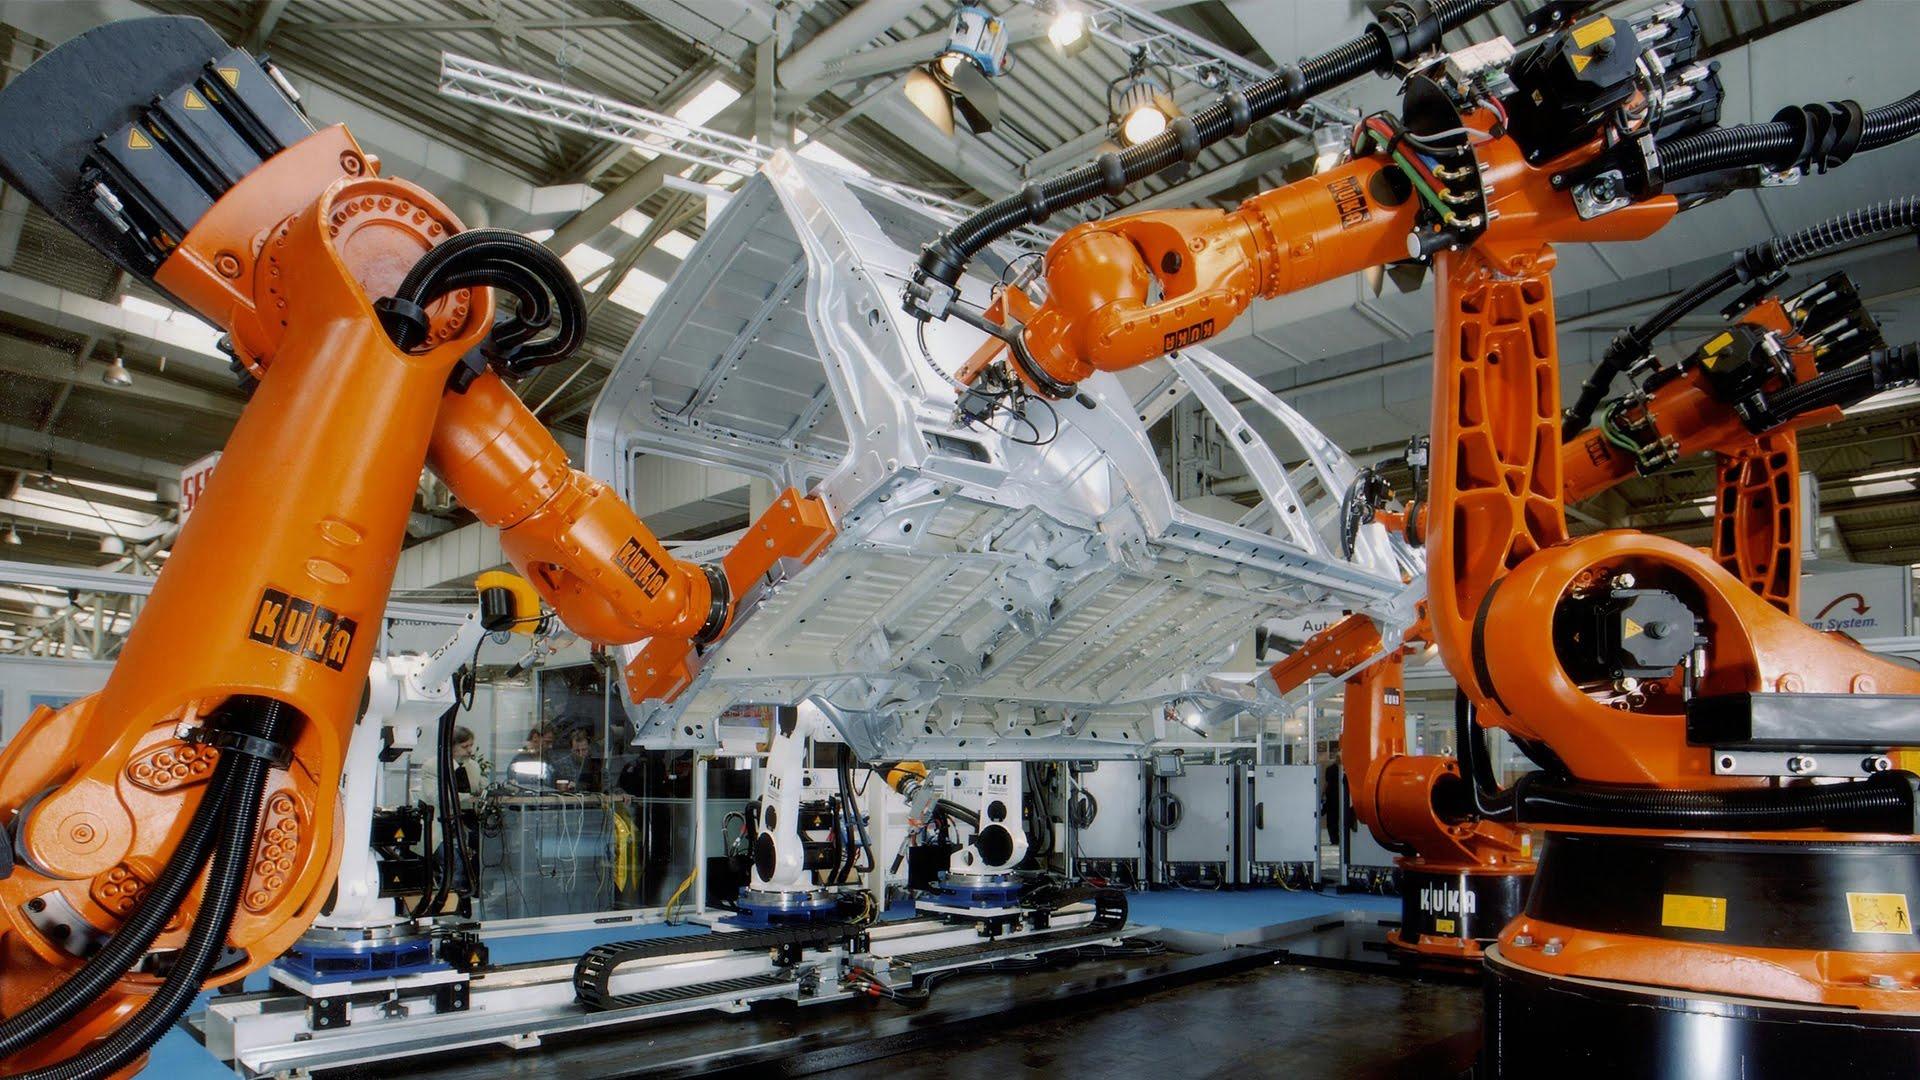 Где был изобретен первый промышленный робот. Промышленный робот манипулятор kuka. Промышленный робот Бриг – 10б. Промышленный робот Циклоп-5.01. Роботизированный Технологический комплекс kuka.